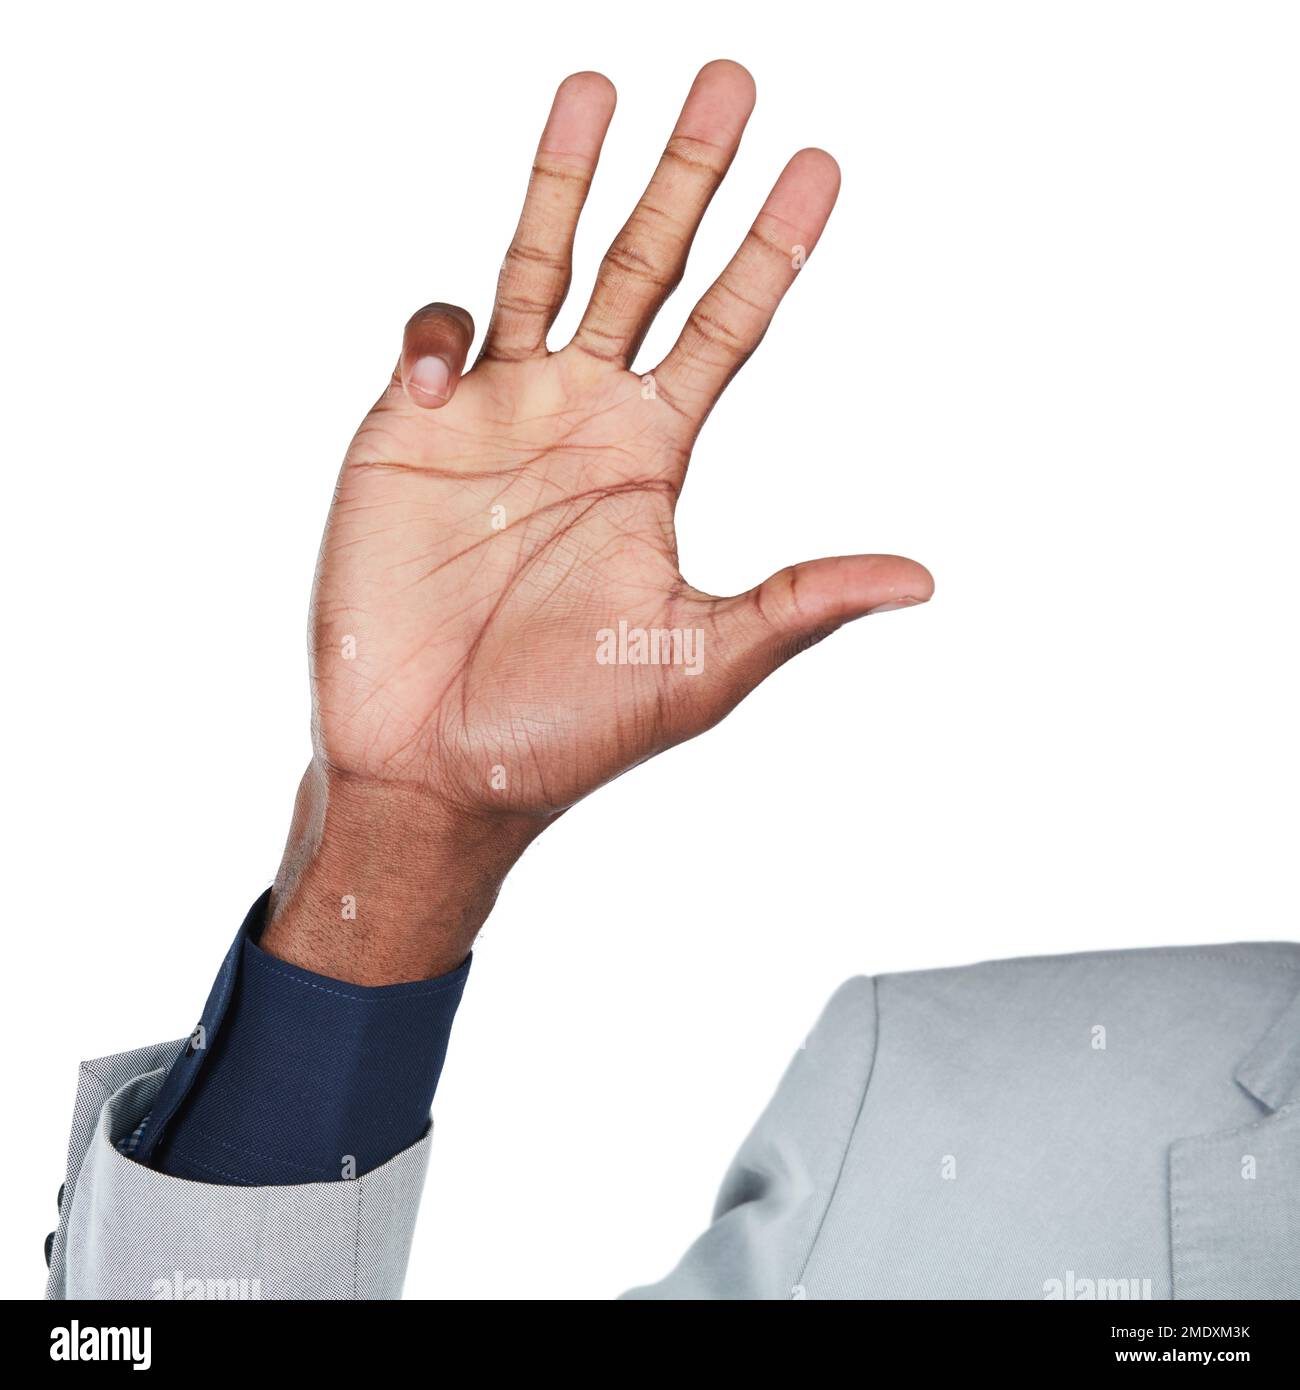 Handgeste, Handfläche und Mockup mit einem Business-Schwarzen im Studio isoliert auf weißem Hintergrund, um eine Zahl zu zeichnen. Emoji, Ikone und Unterschrift mit einem Mann Stockfoto